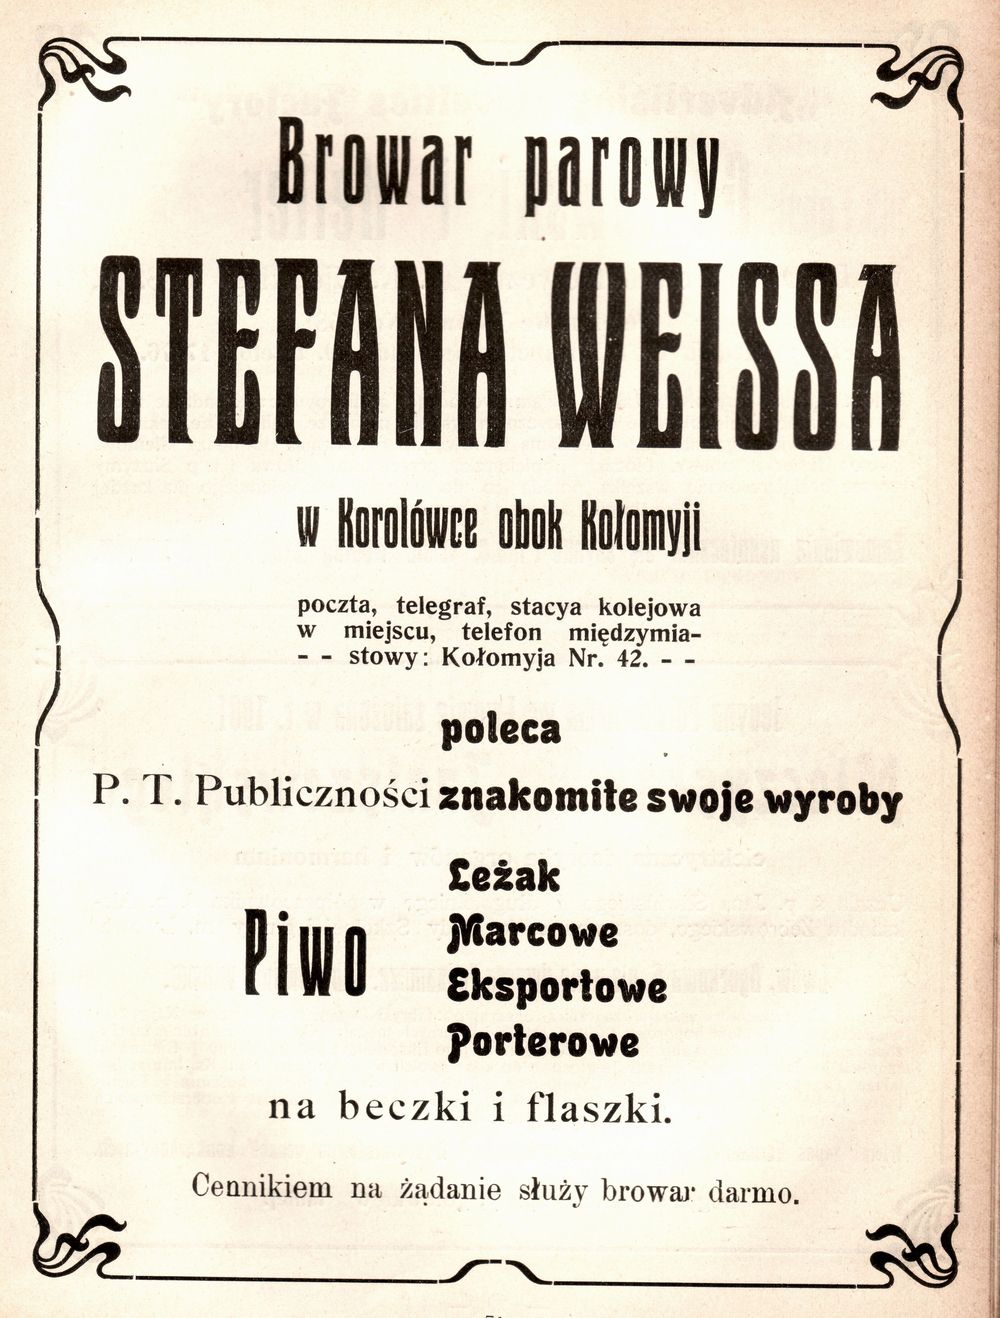 Reklama prasowa Browaru parowego Stefana Weissa w Korolówce